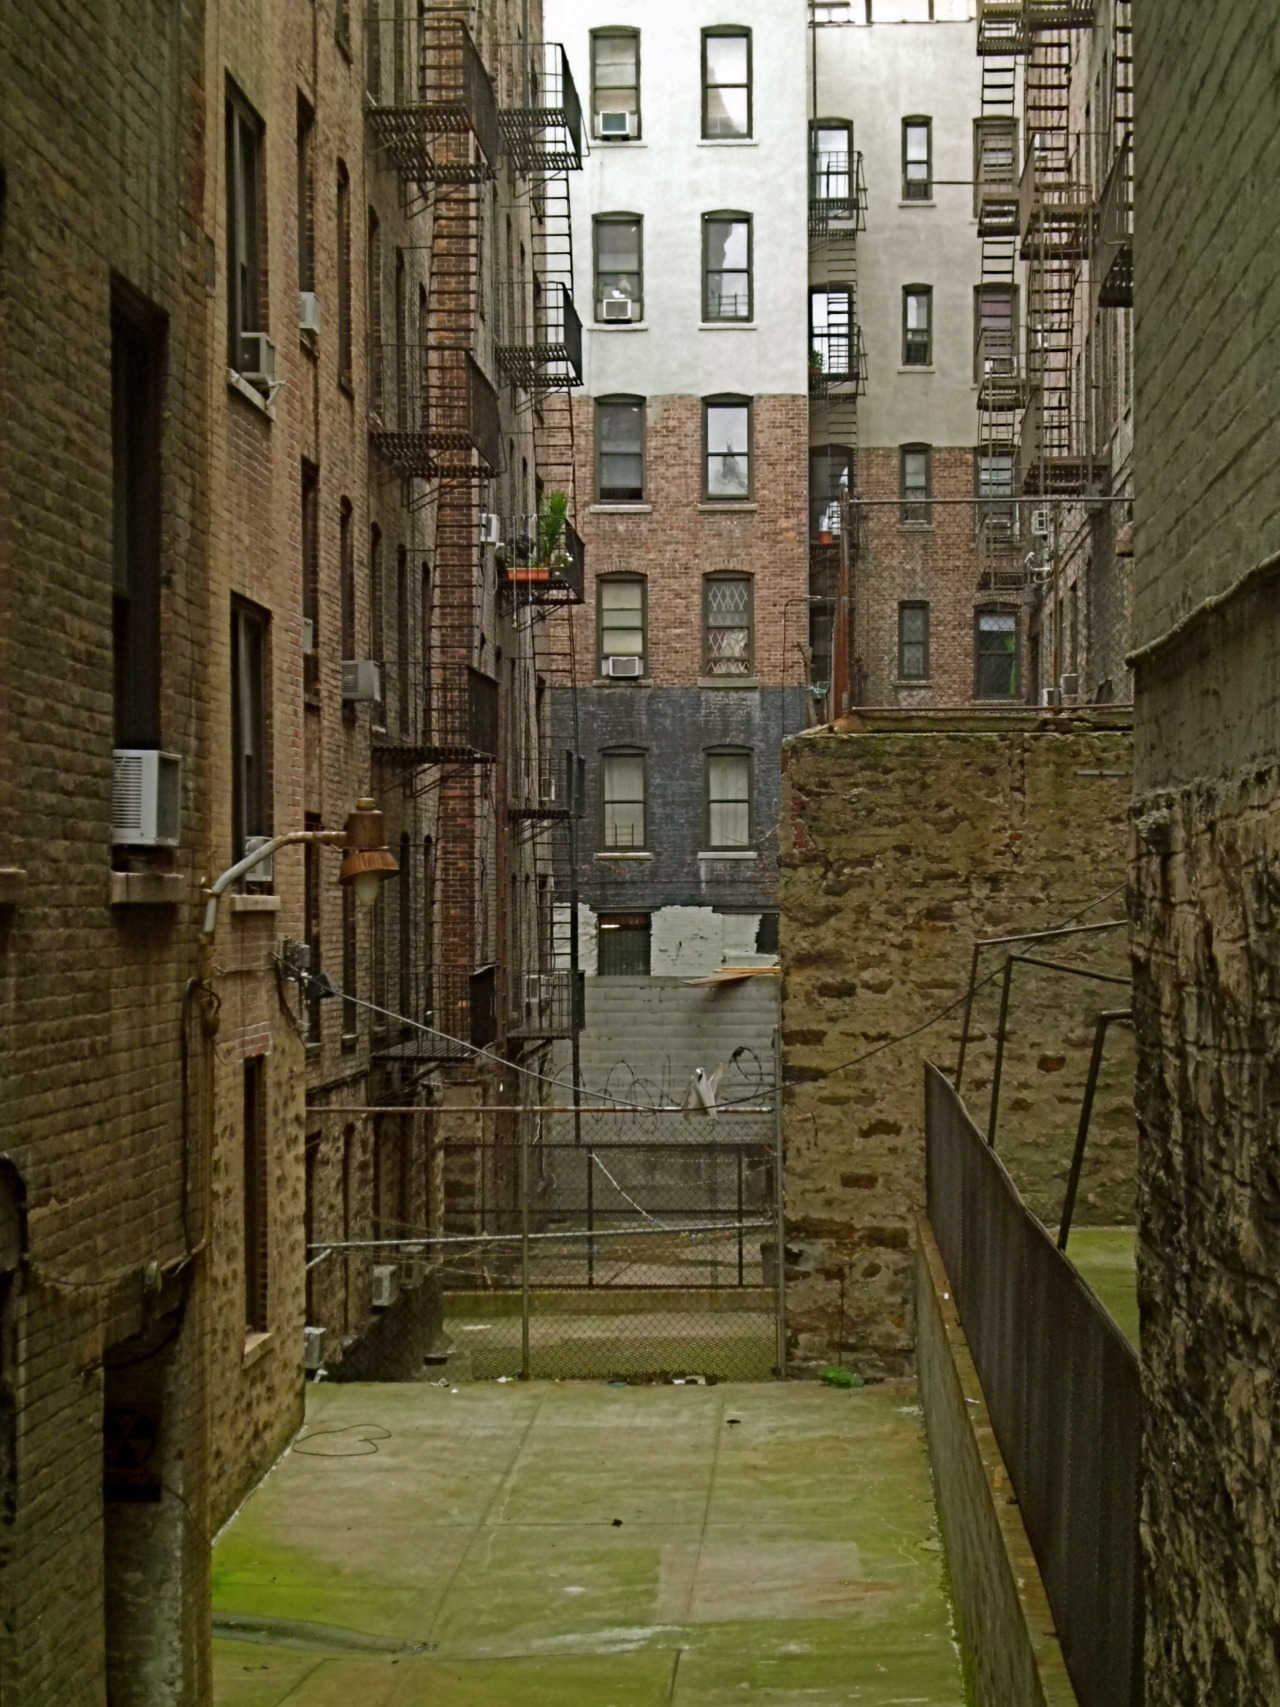 Wandering New York, An alleyway in Washington Heights.